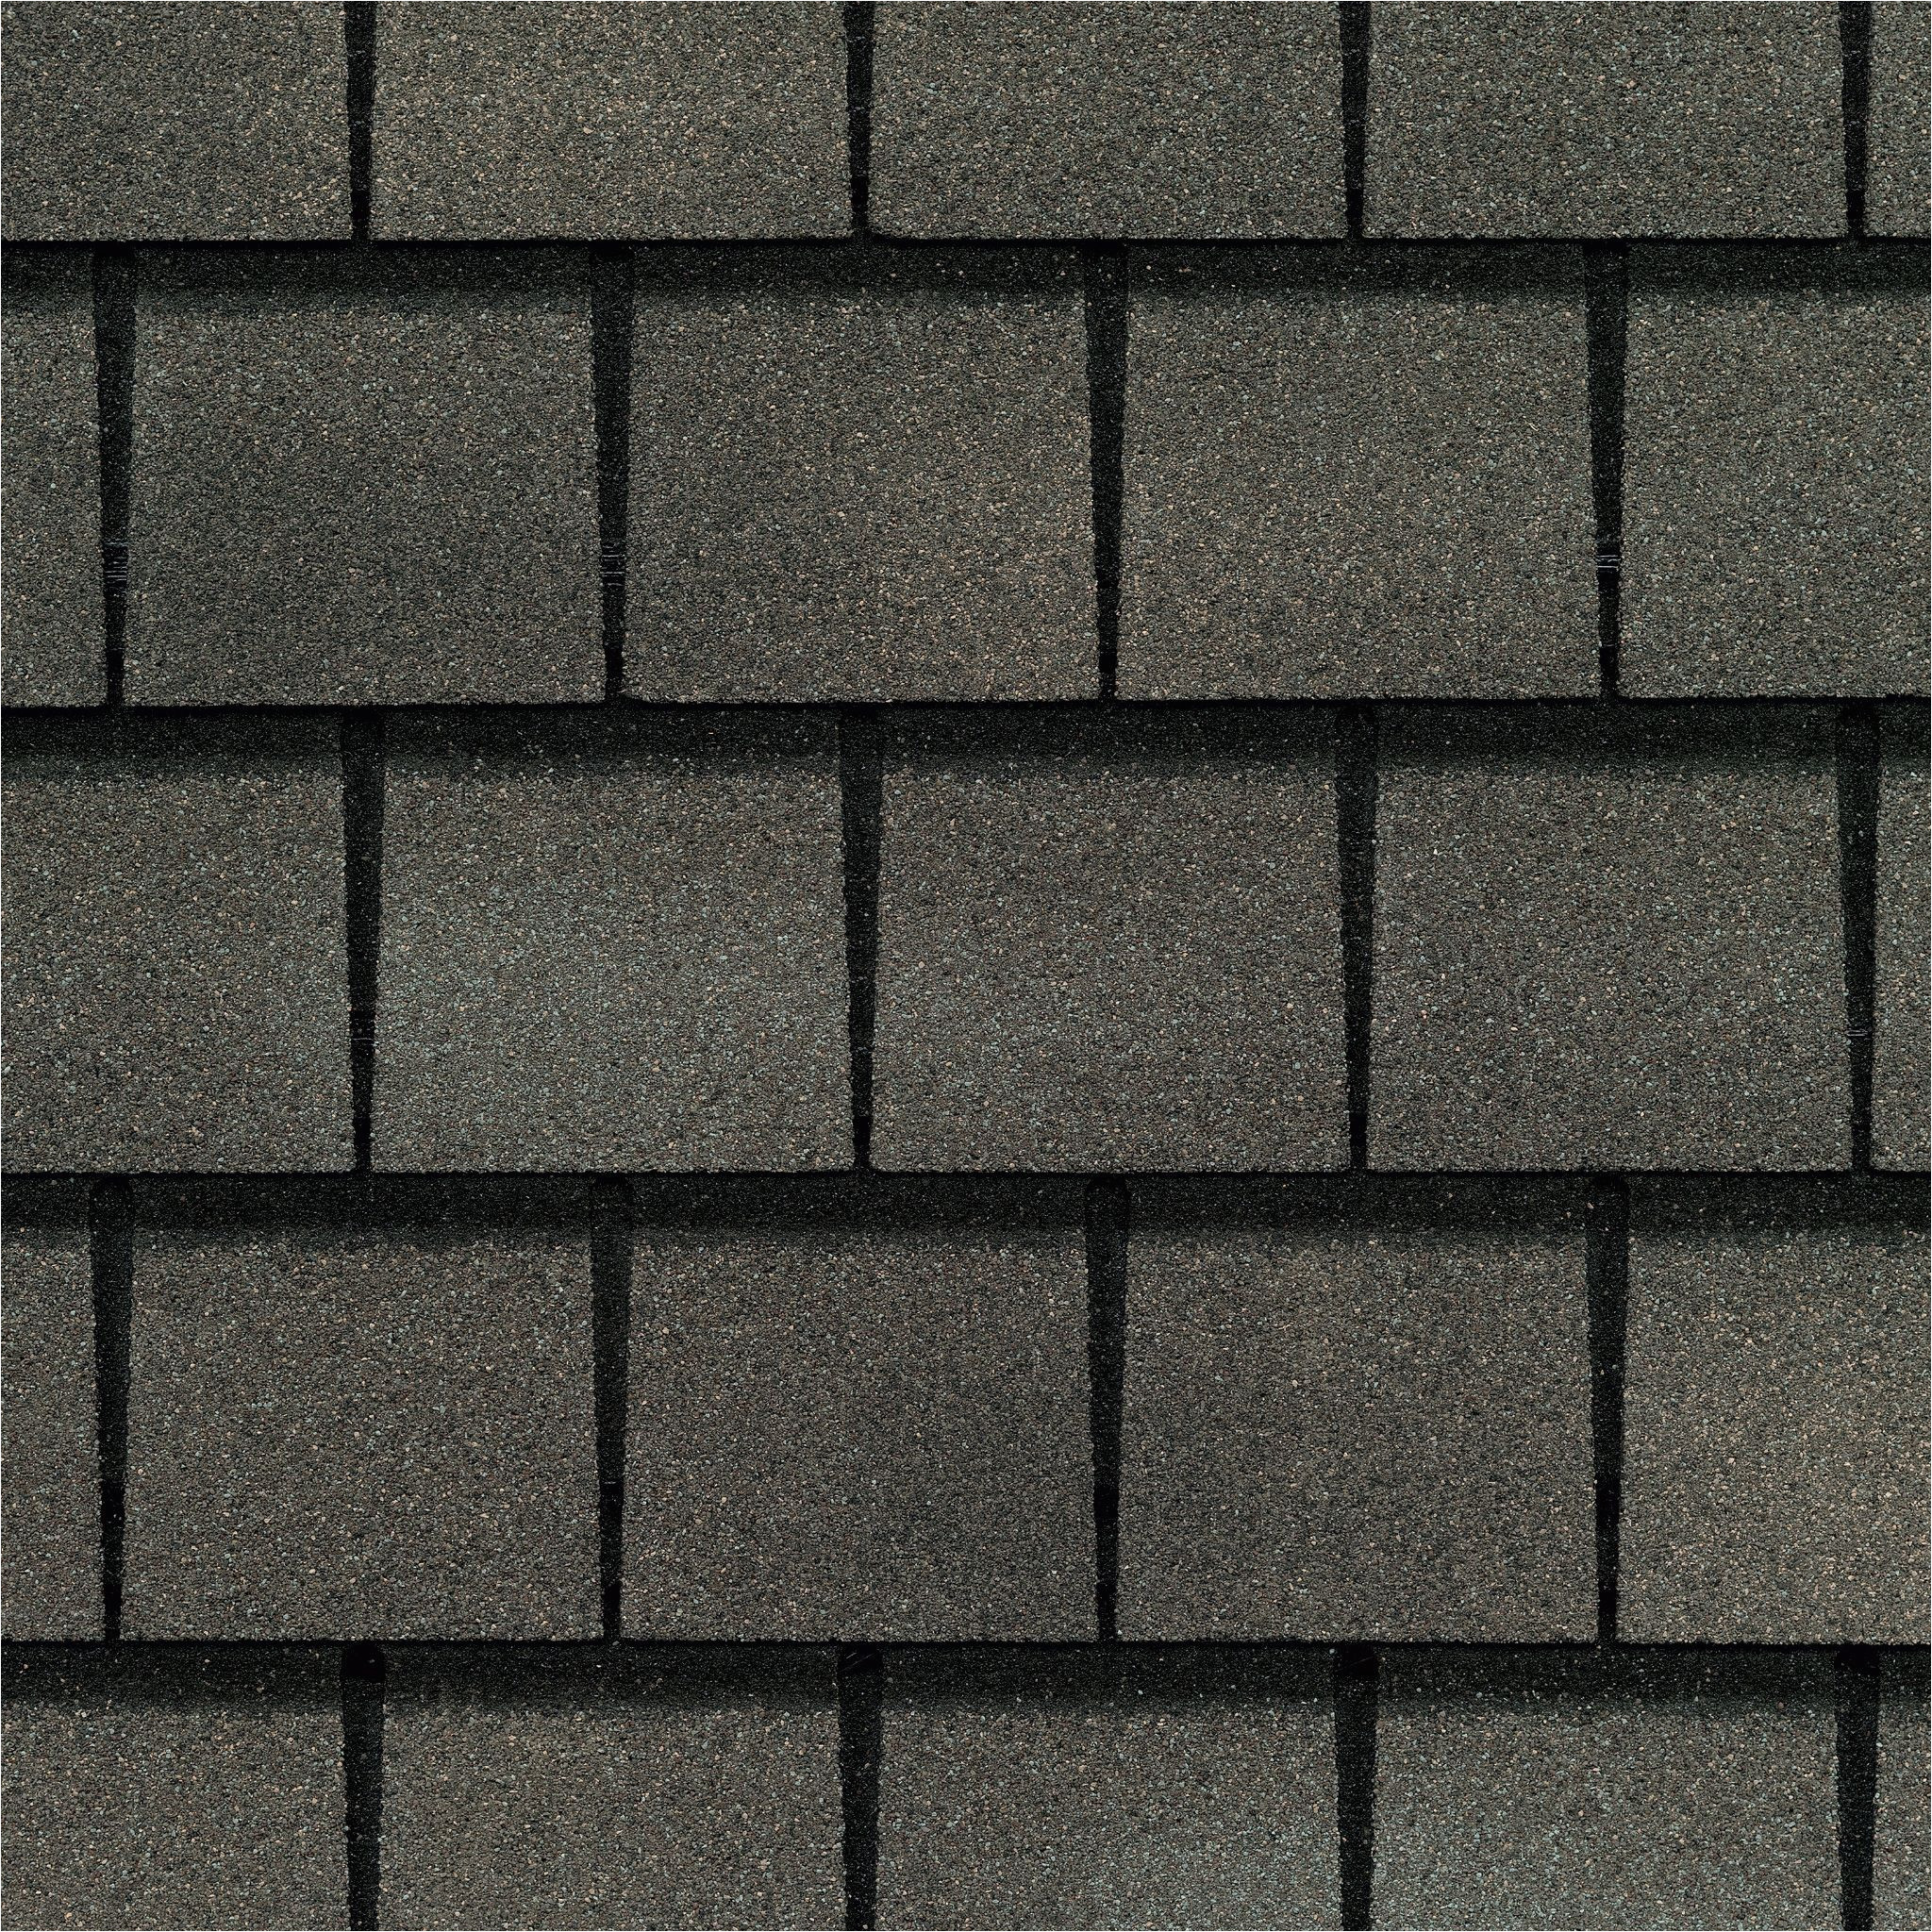 Gaf Royal sovereign Shingle Colors 11 Best Slateline Images Residential Roofing asphalt Roof